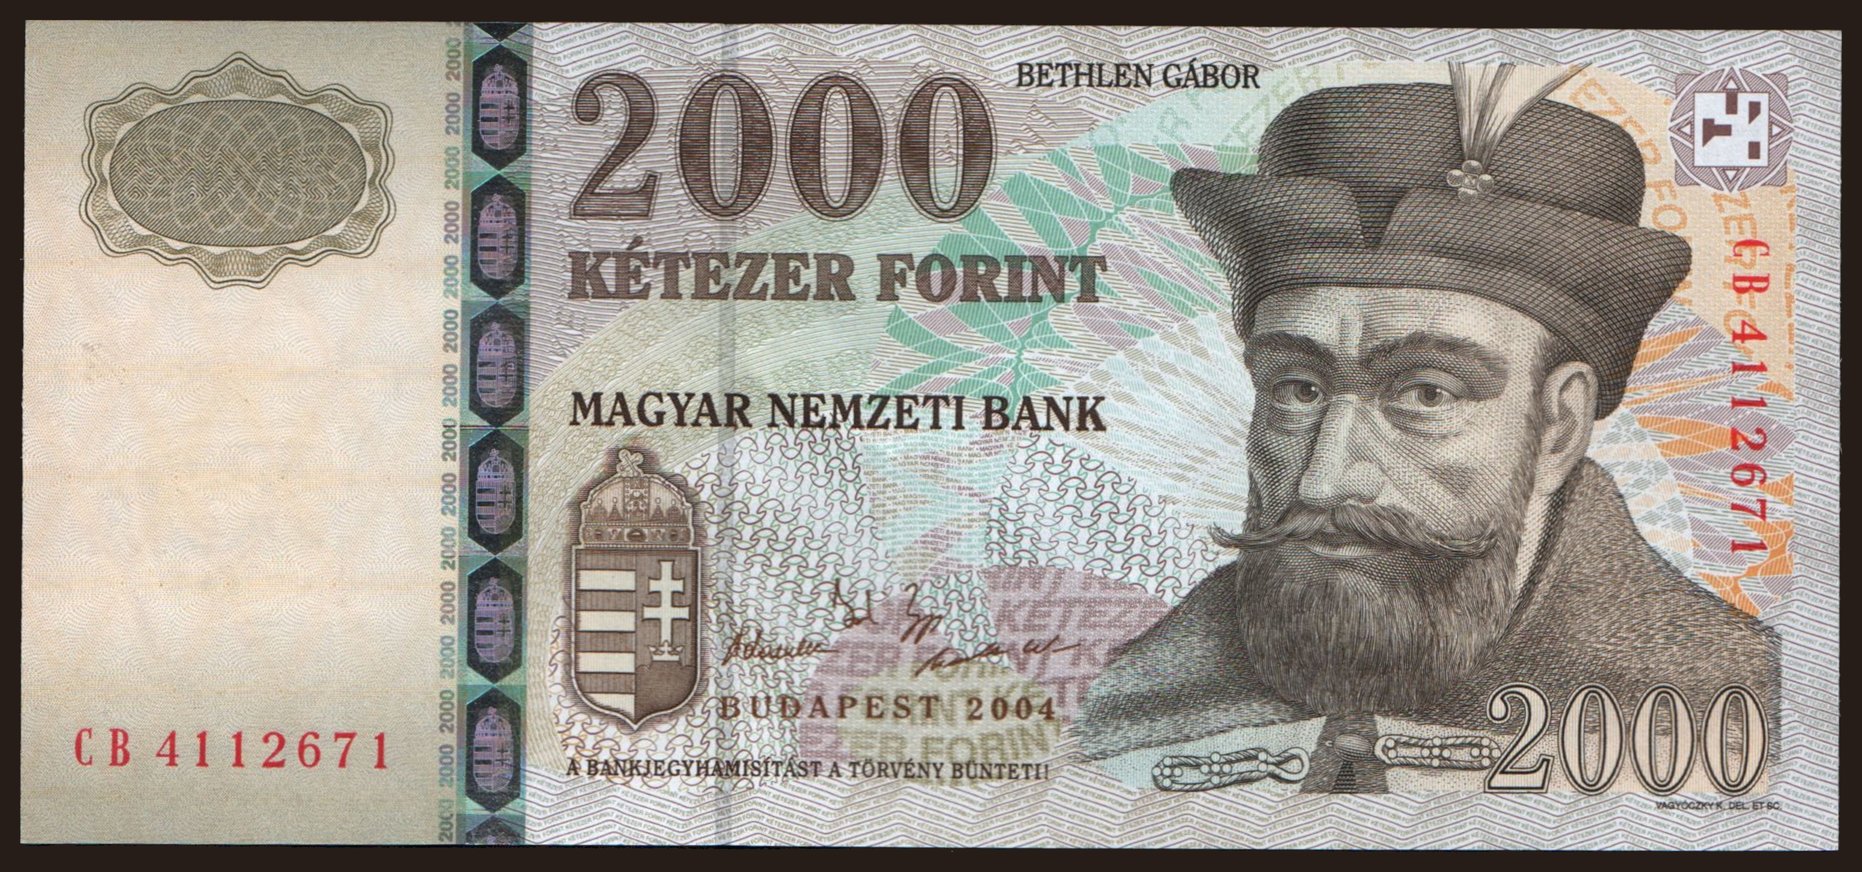 2000 forint, 2004